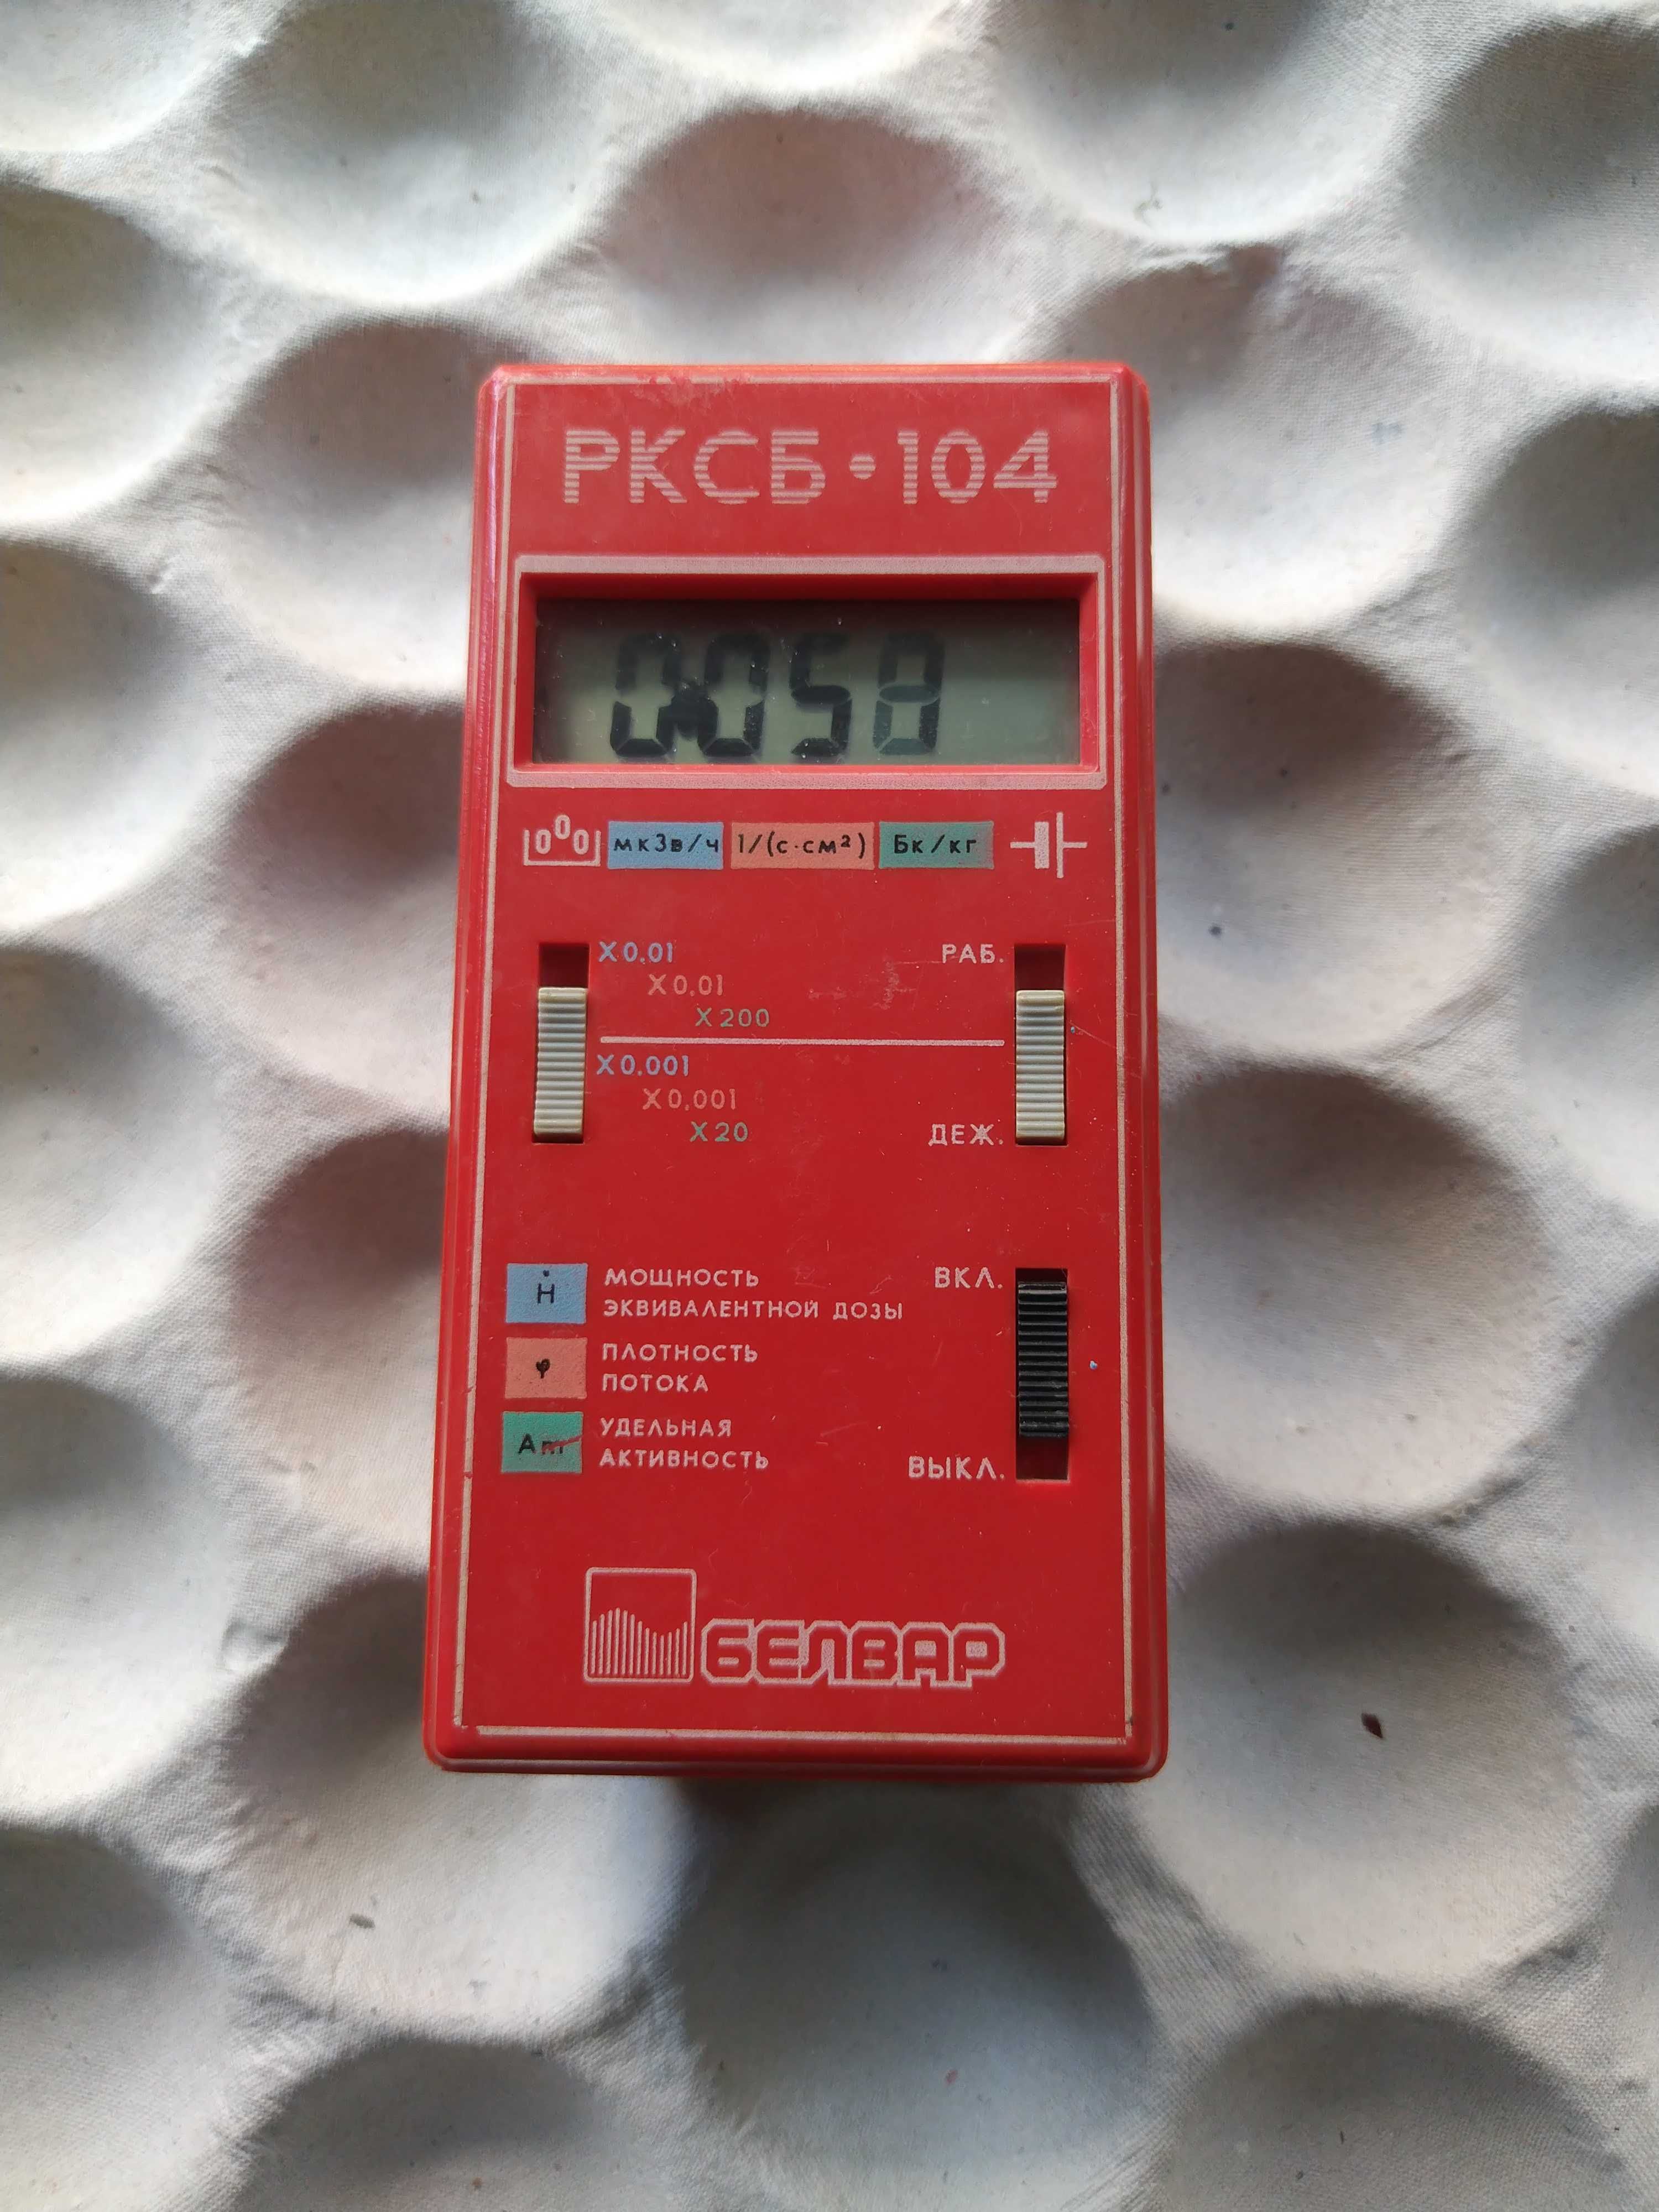 Detektor promieniowania PKCB 104, PKCБ 104